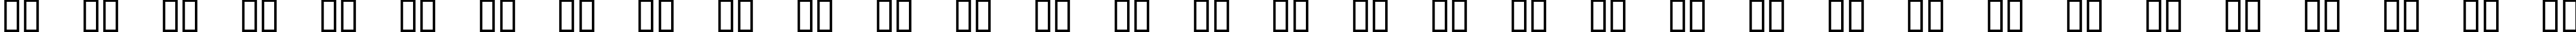 Пример написания русского алфавита шрифтом QUAKE